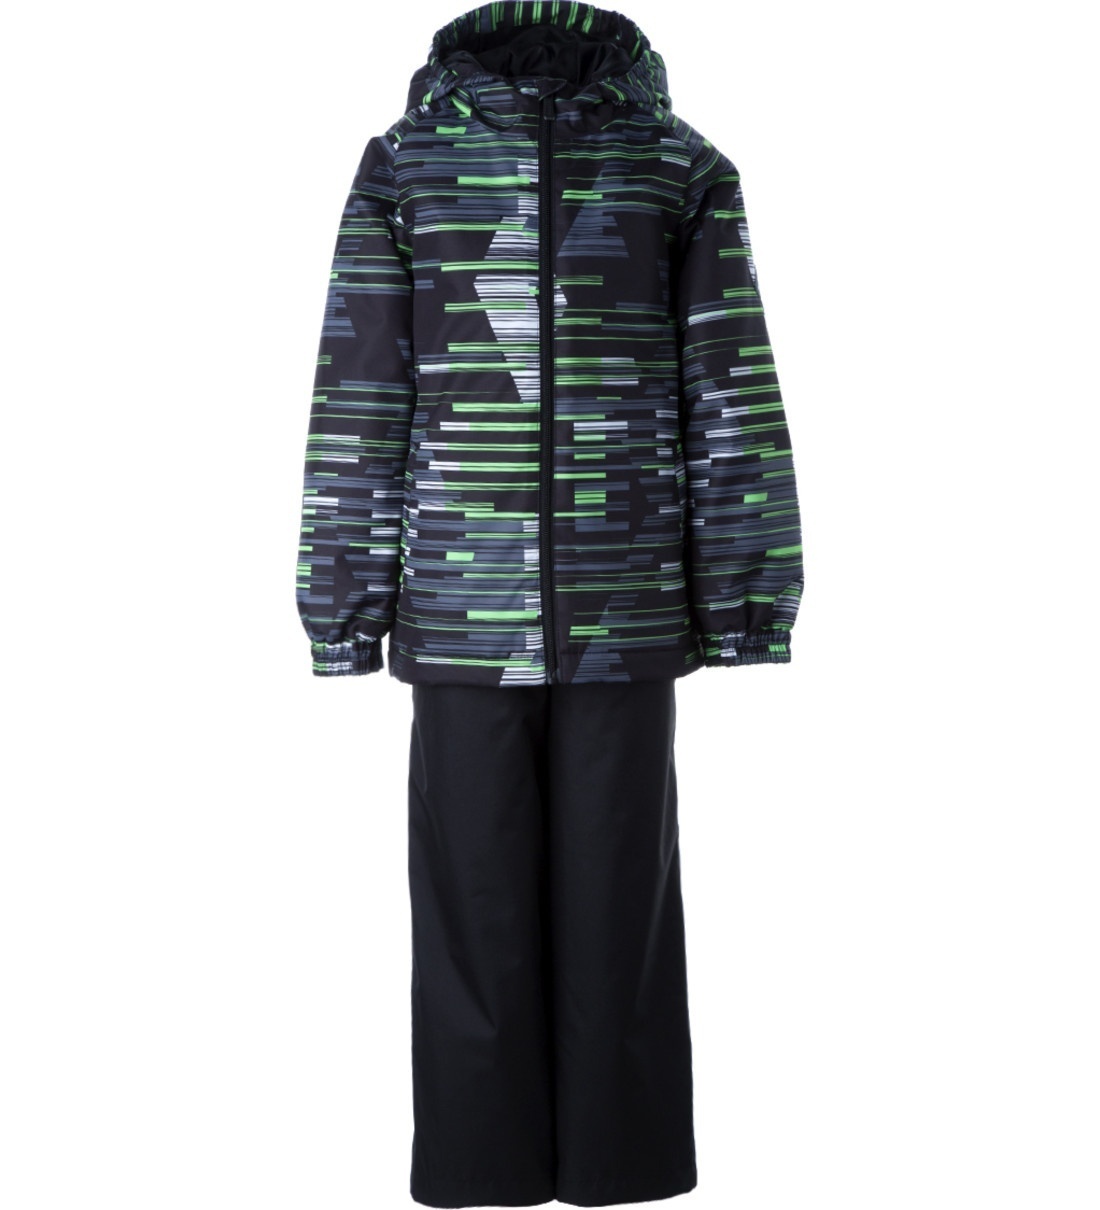 Комплект верхней одежды детский Huppa REX, салатовый, черный, 128